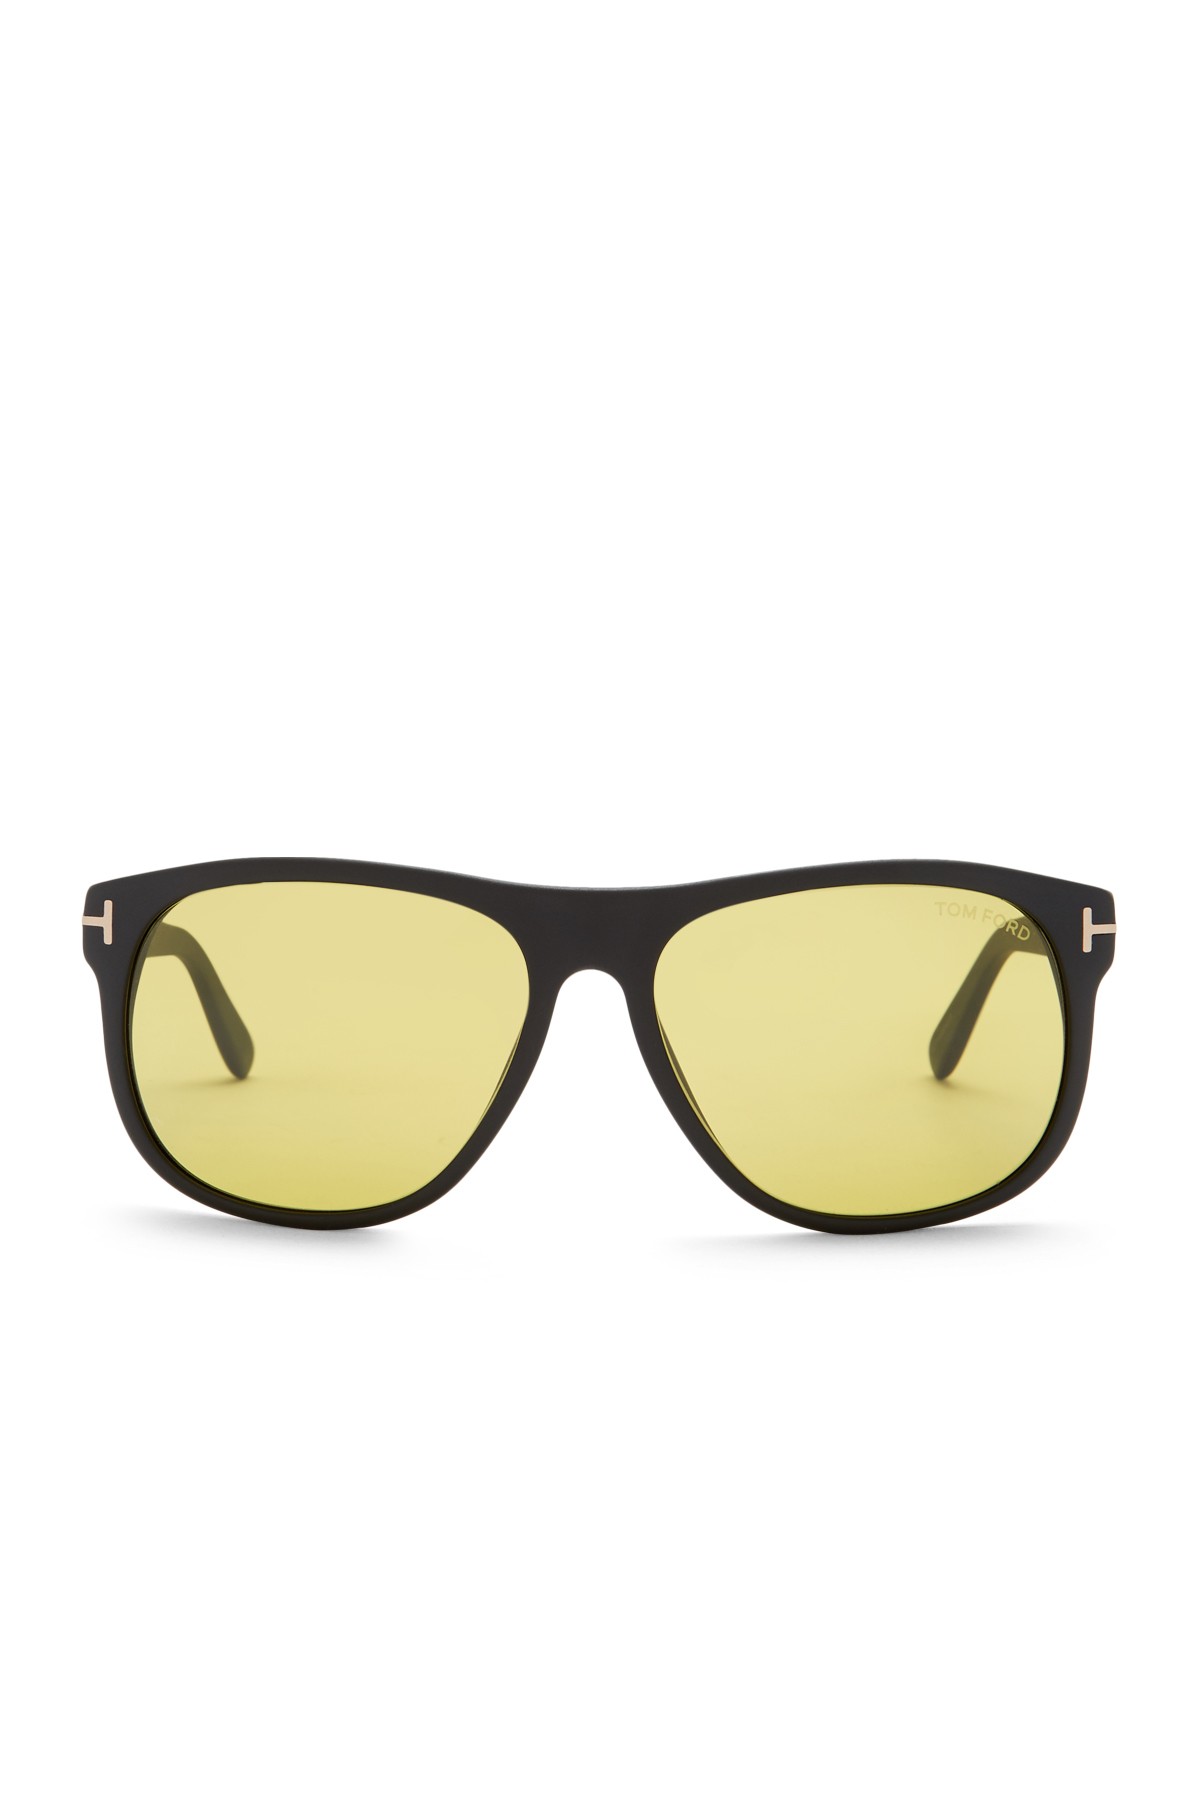 Tom Ford | Olivier 58mm Retro Sunglasses | Nordstrom Rack